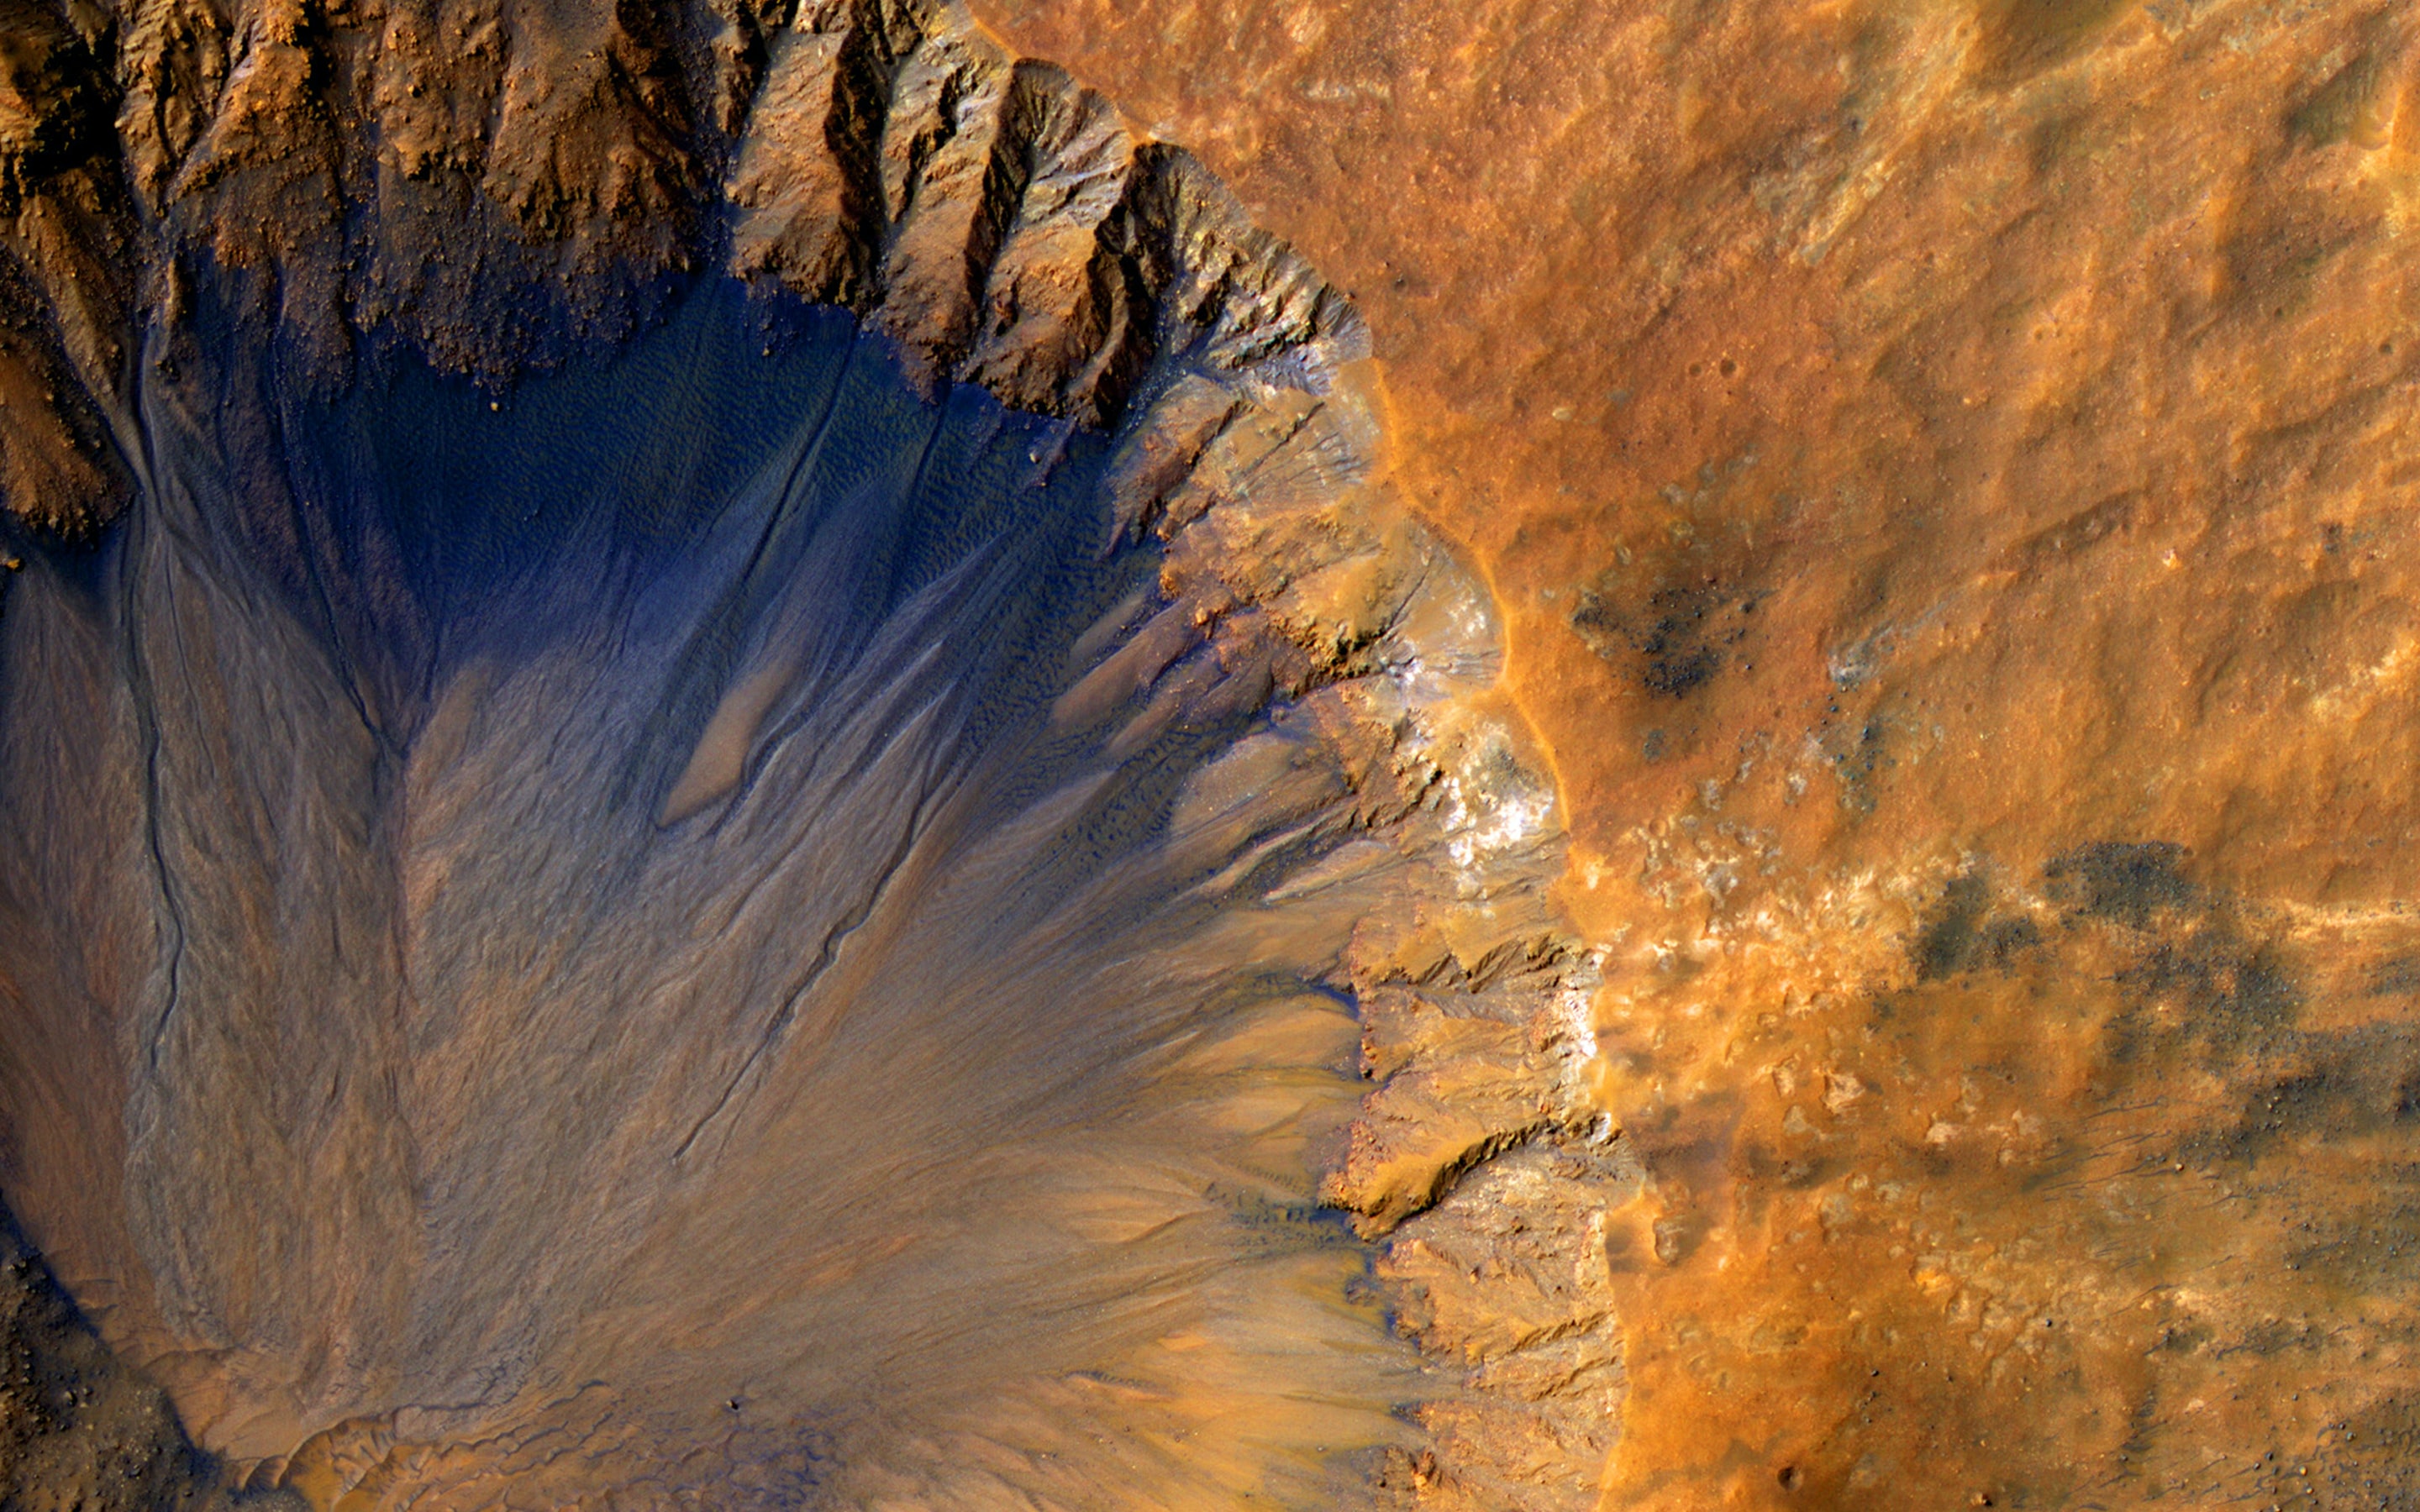 Mars image, courtesy of NASA